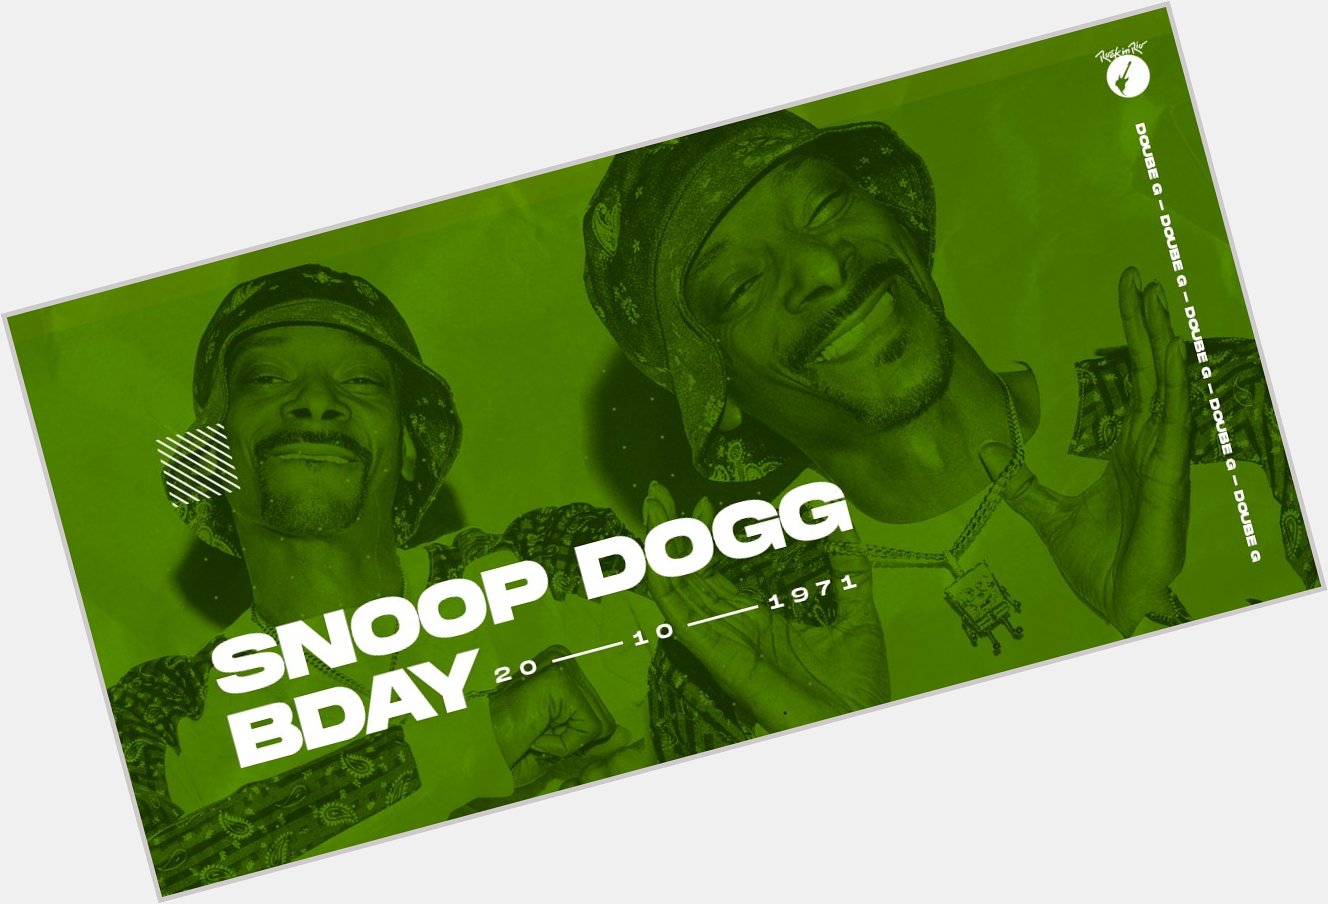 O happy birthday de hoje vai pra essa lenda viva do rap: Snoop Dogg. 